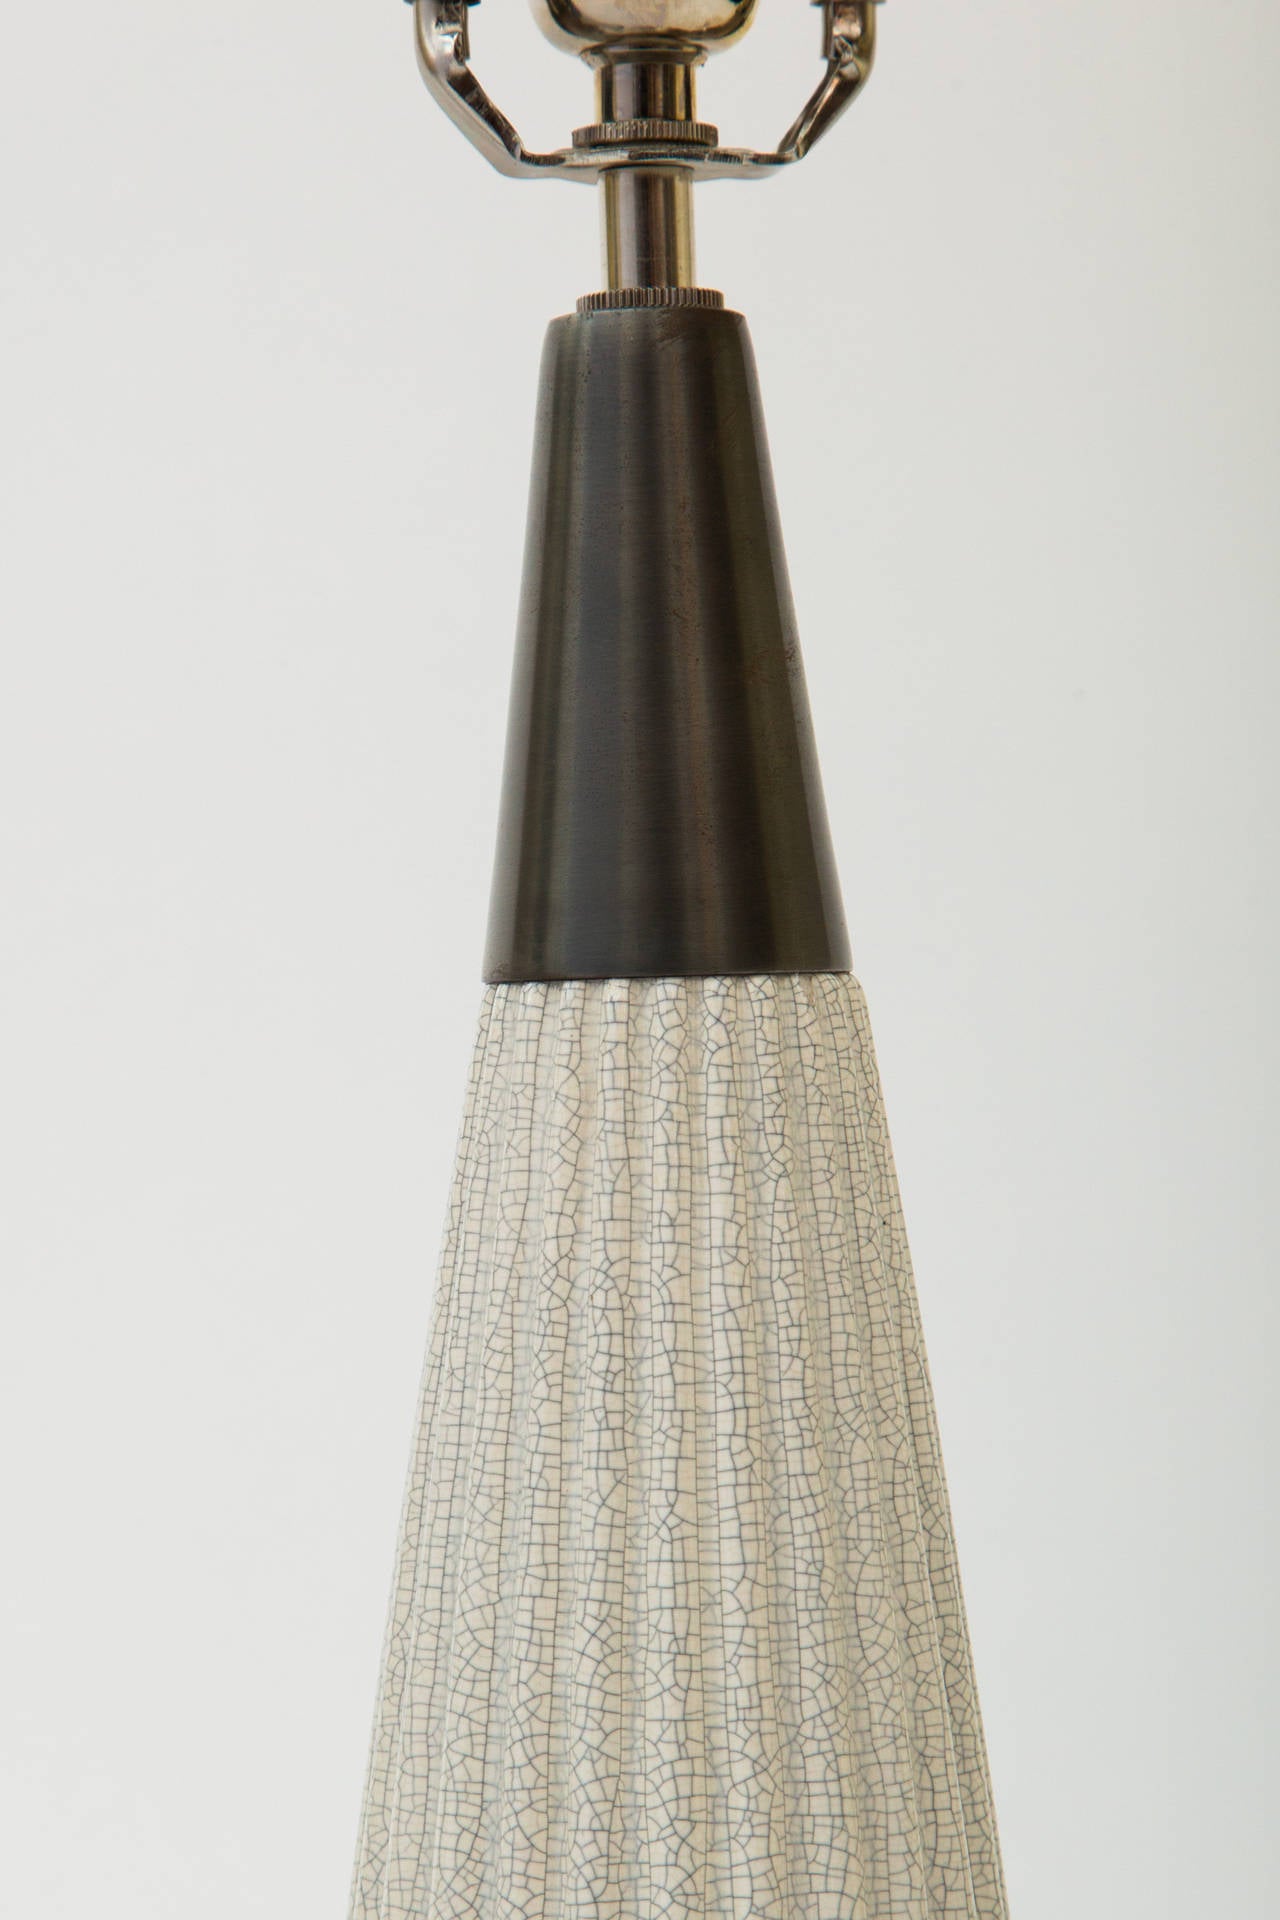 American Pair of Ribbed Ceramic and Metal Lamps